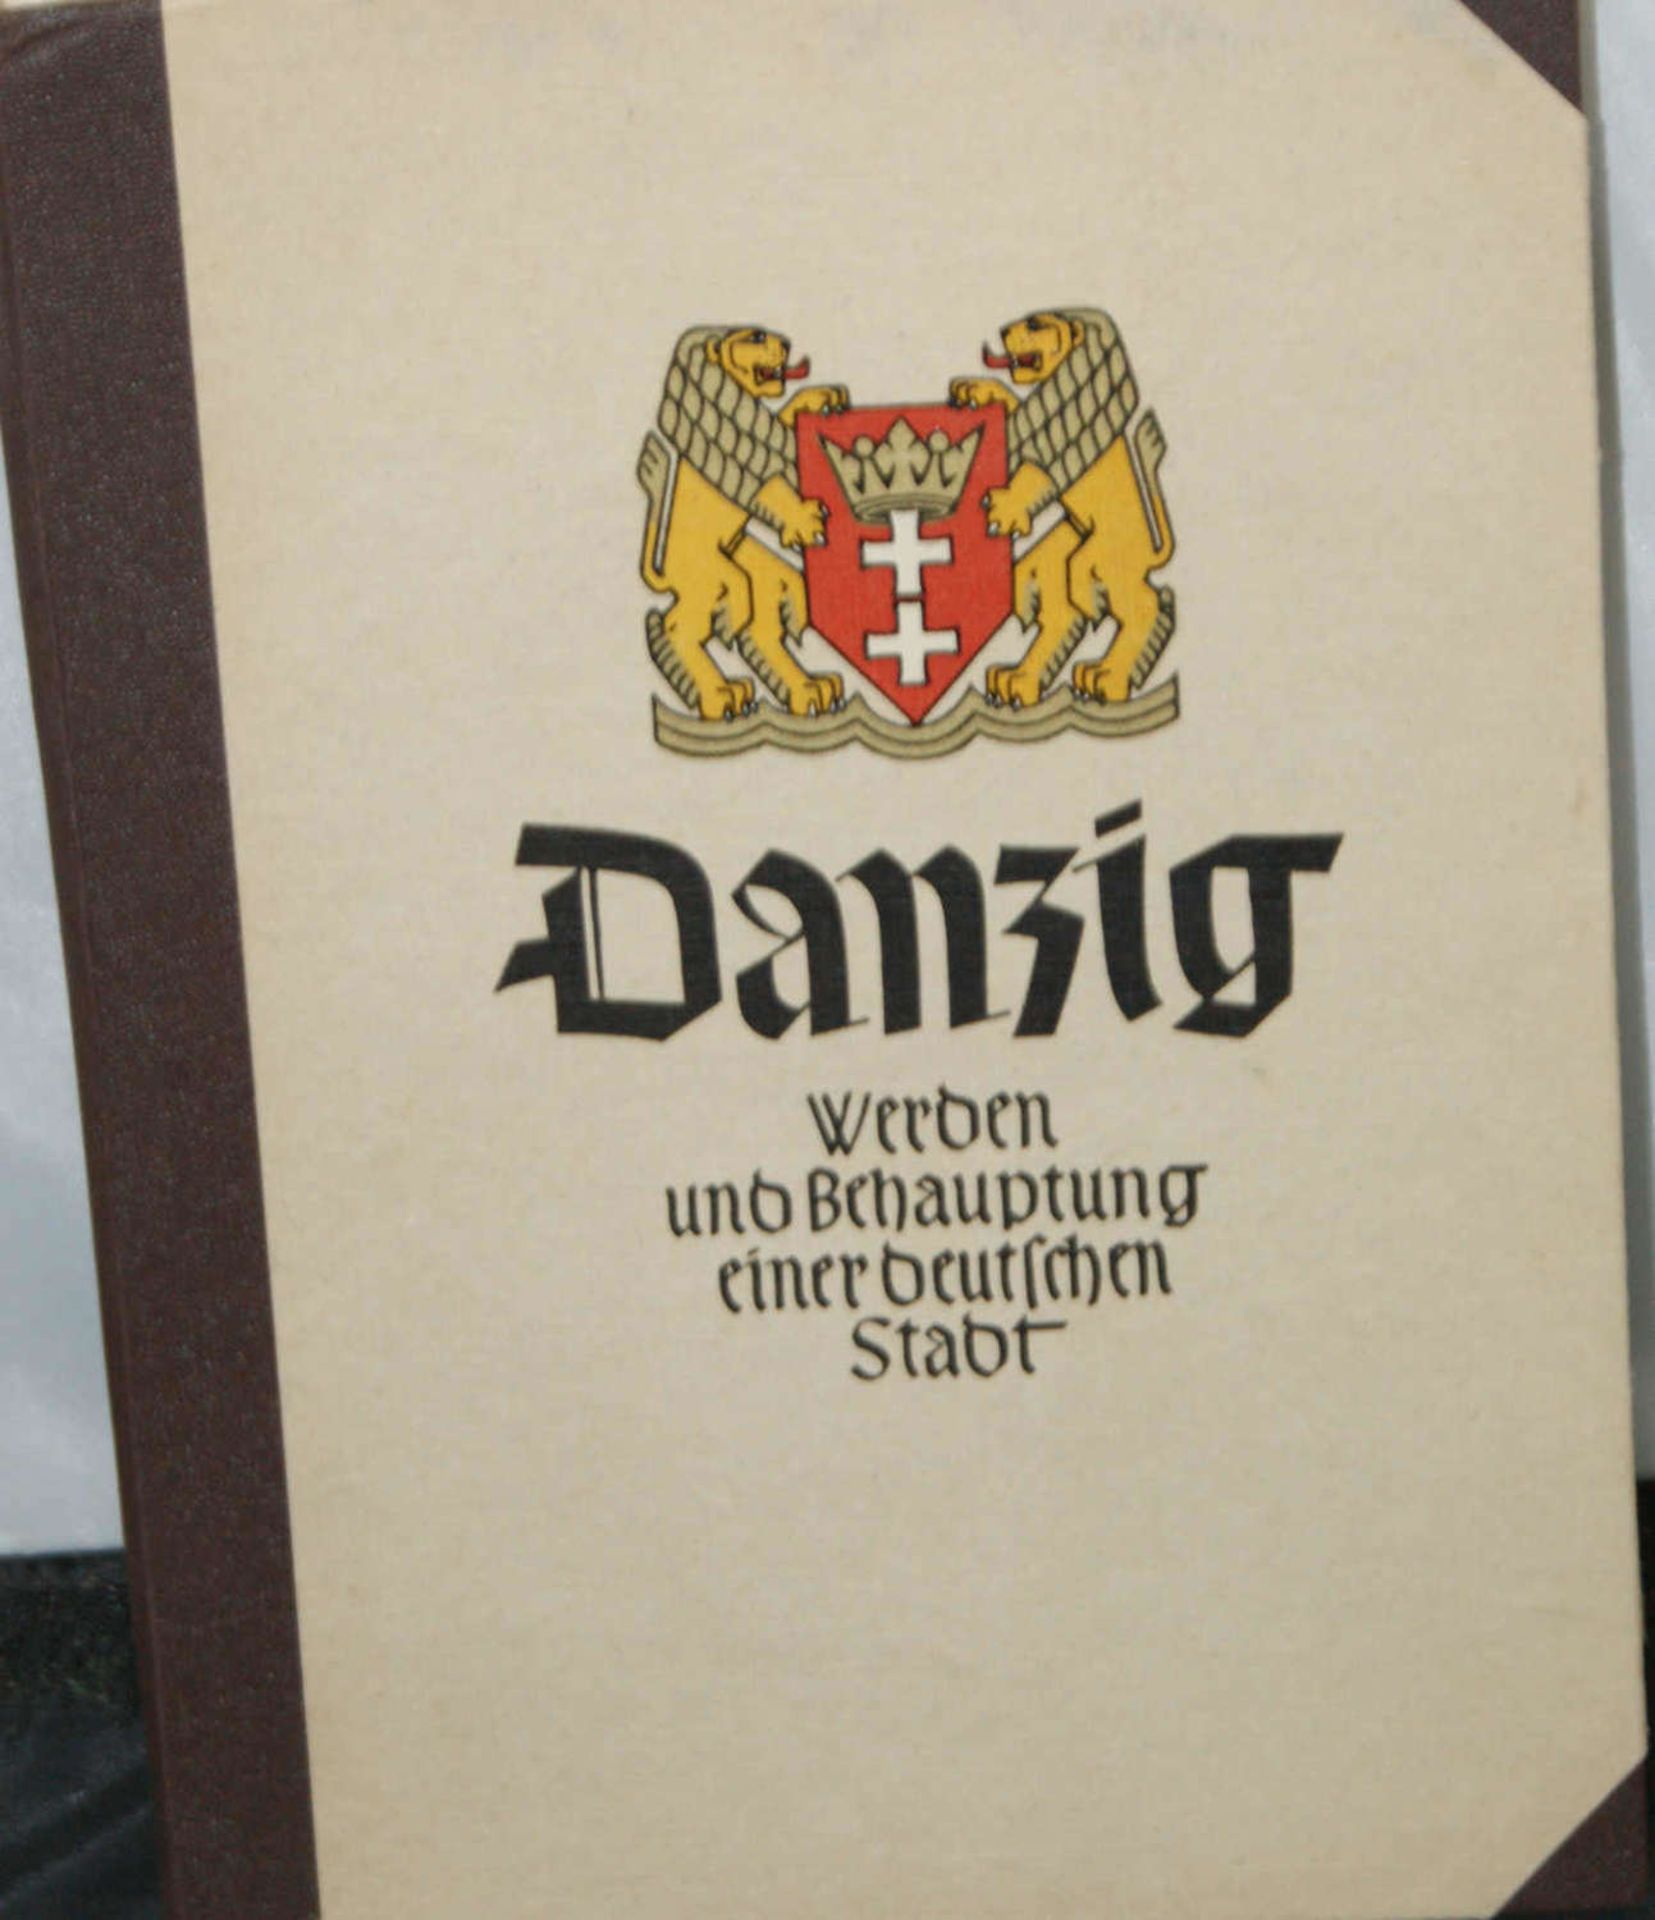 Raumbilderalbum "Danzig werden & Behauptung einer deutschen Stadt", vollständig.Spaces album "Gdansk